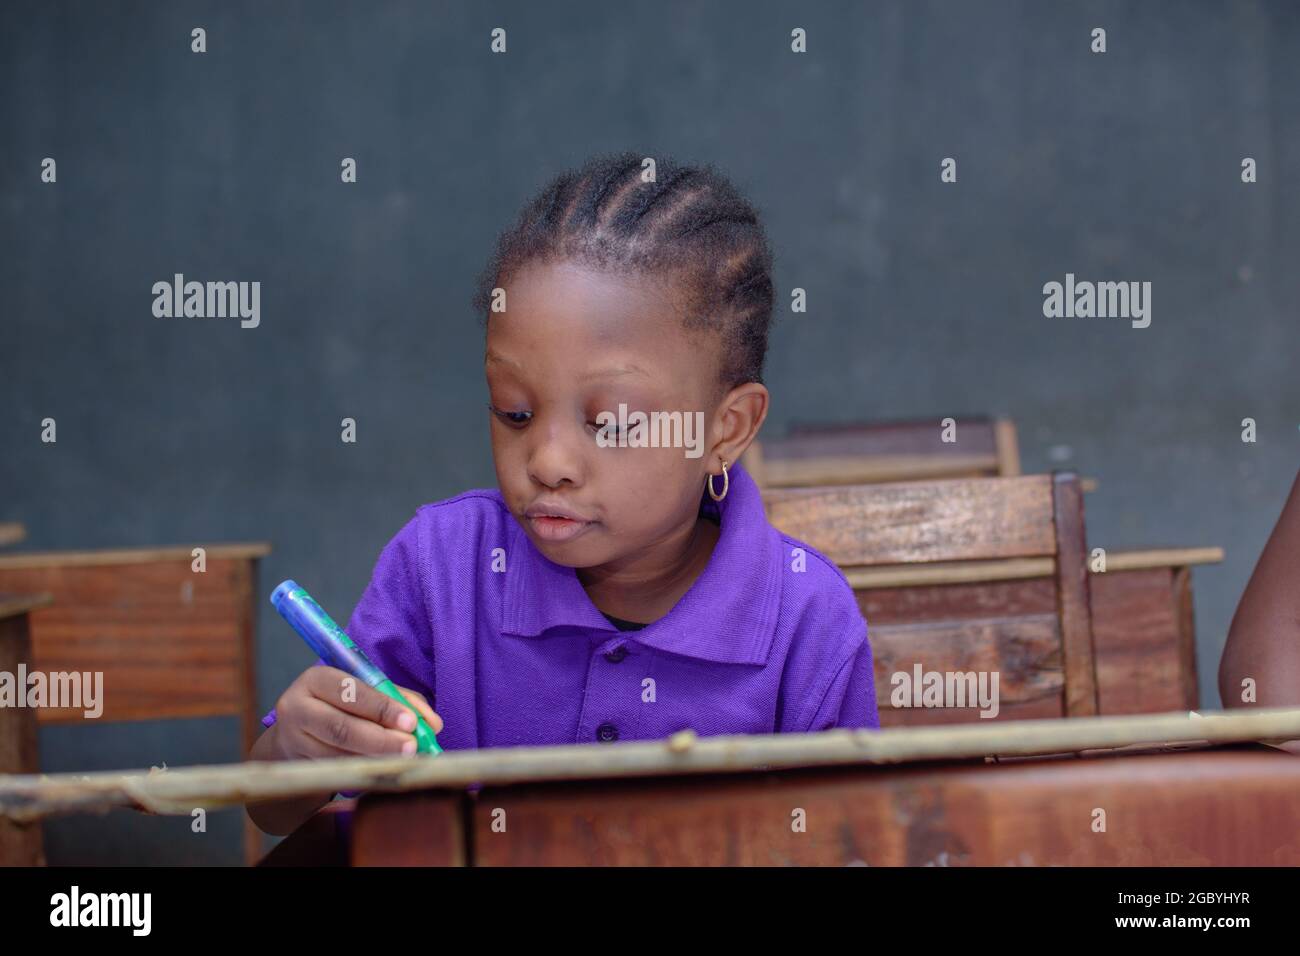 Afrikanisches Mädchen, Schülerin oder Schülerin, die sich in einem Klassenzimmer hinsetzt und schreibt, während sie in ihrer Schule, Ausbildung und Karriere für hervorragende Leistungen studiert Stockfoto